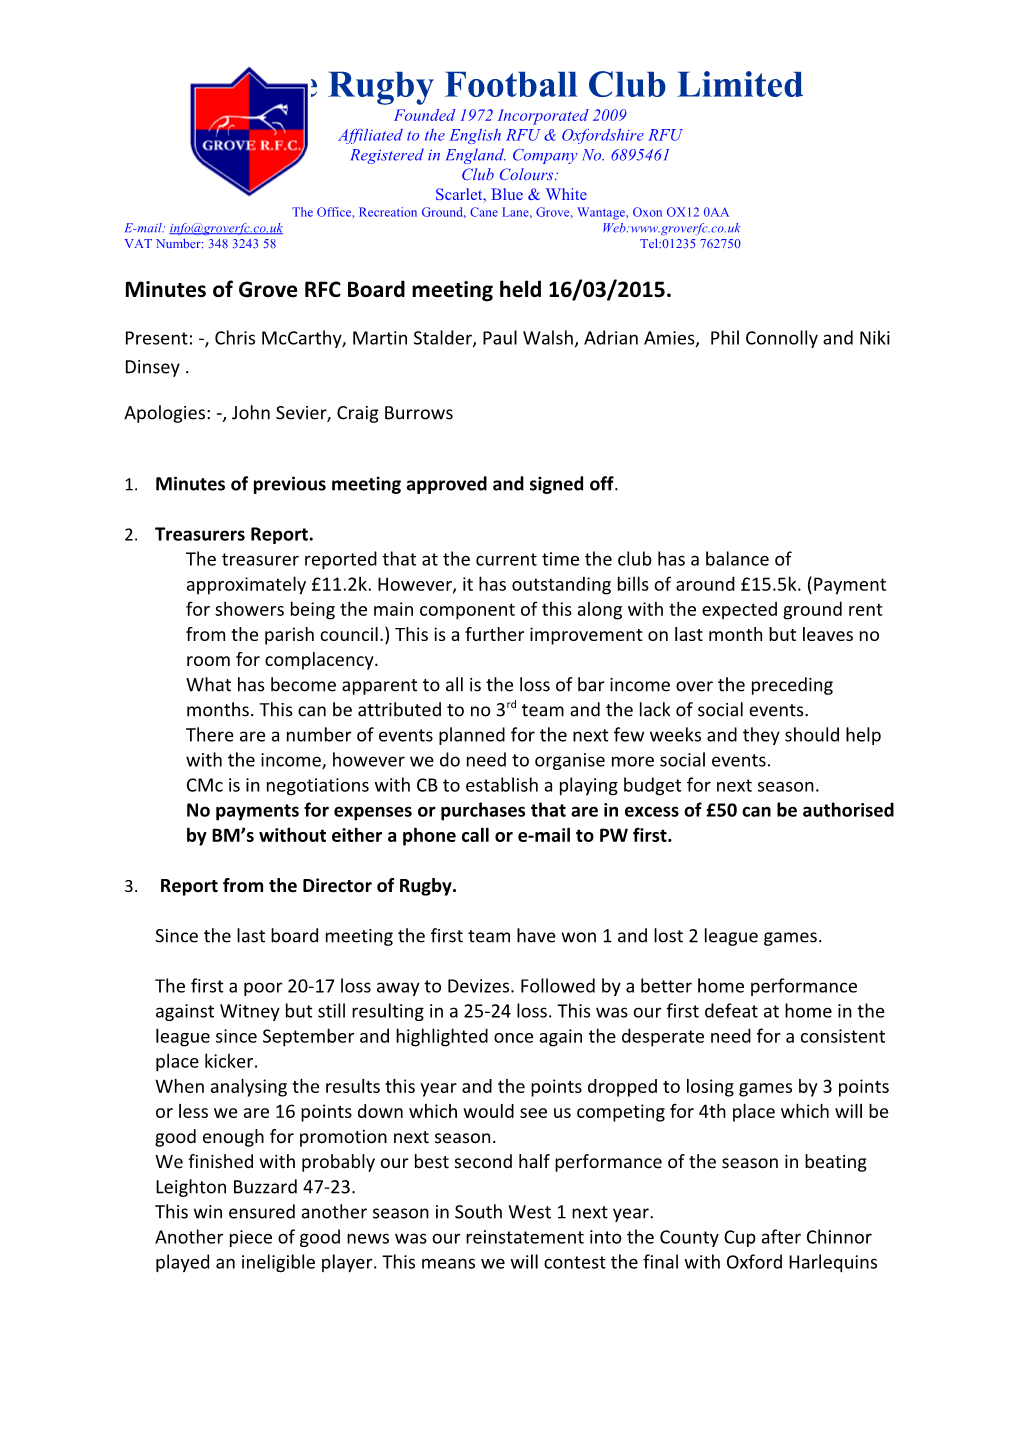 Minutes of Grove RFC Board Meeting Held 16/03/2015